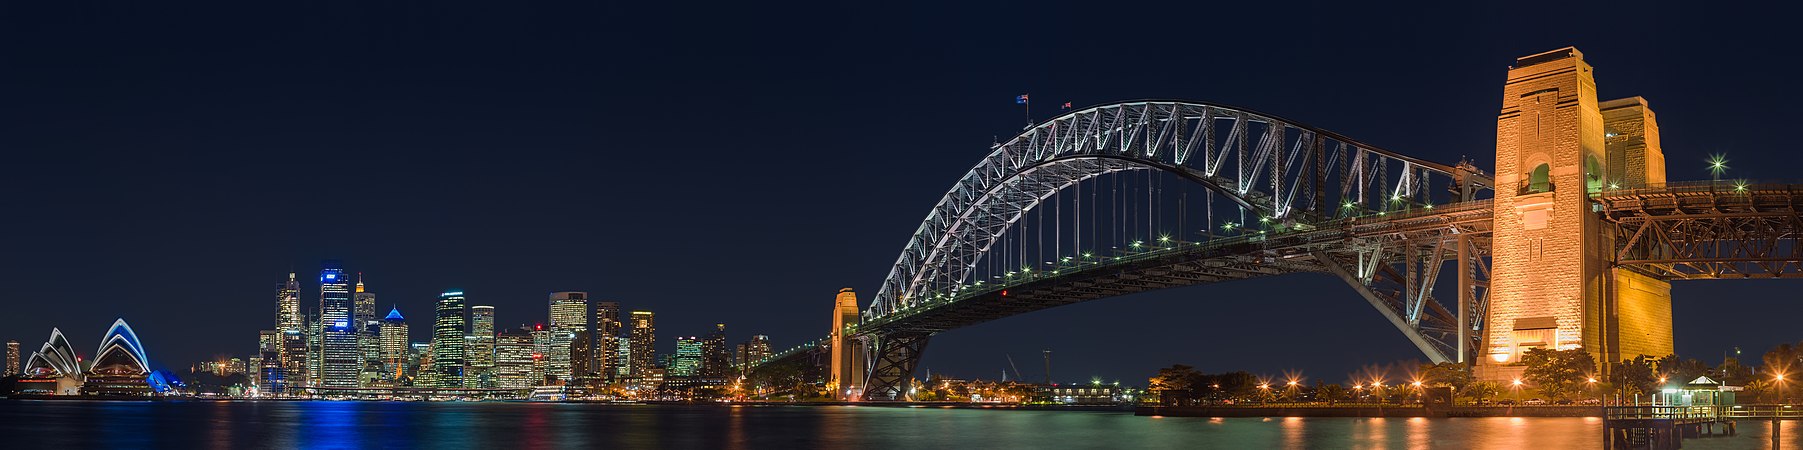 Sydney Harbour Bridge, by Diliff